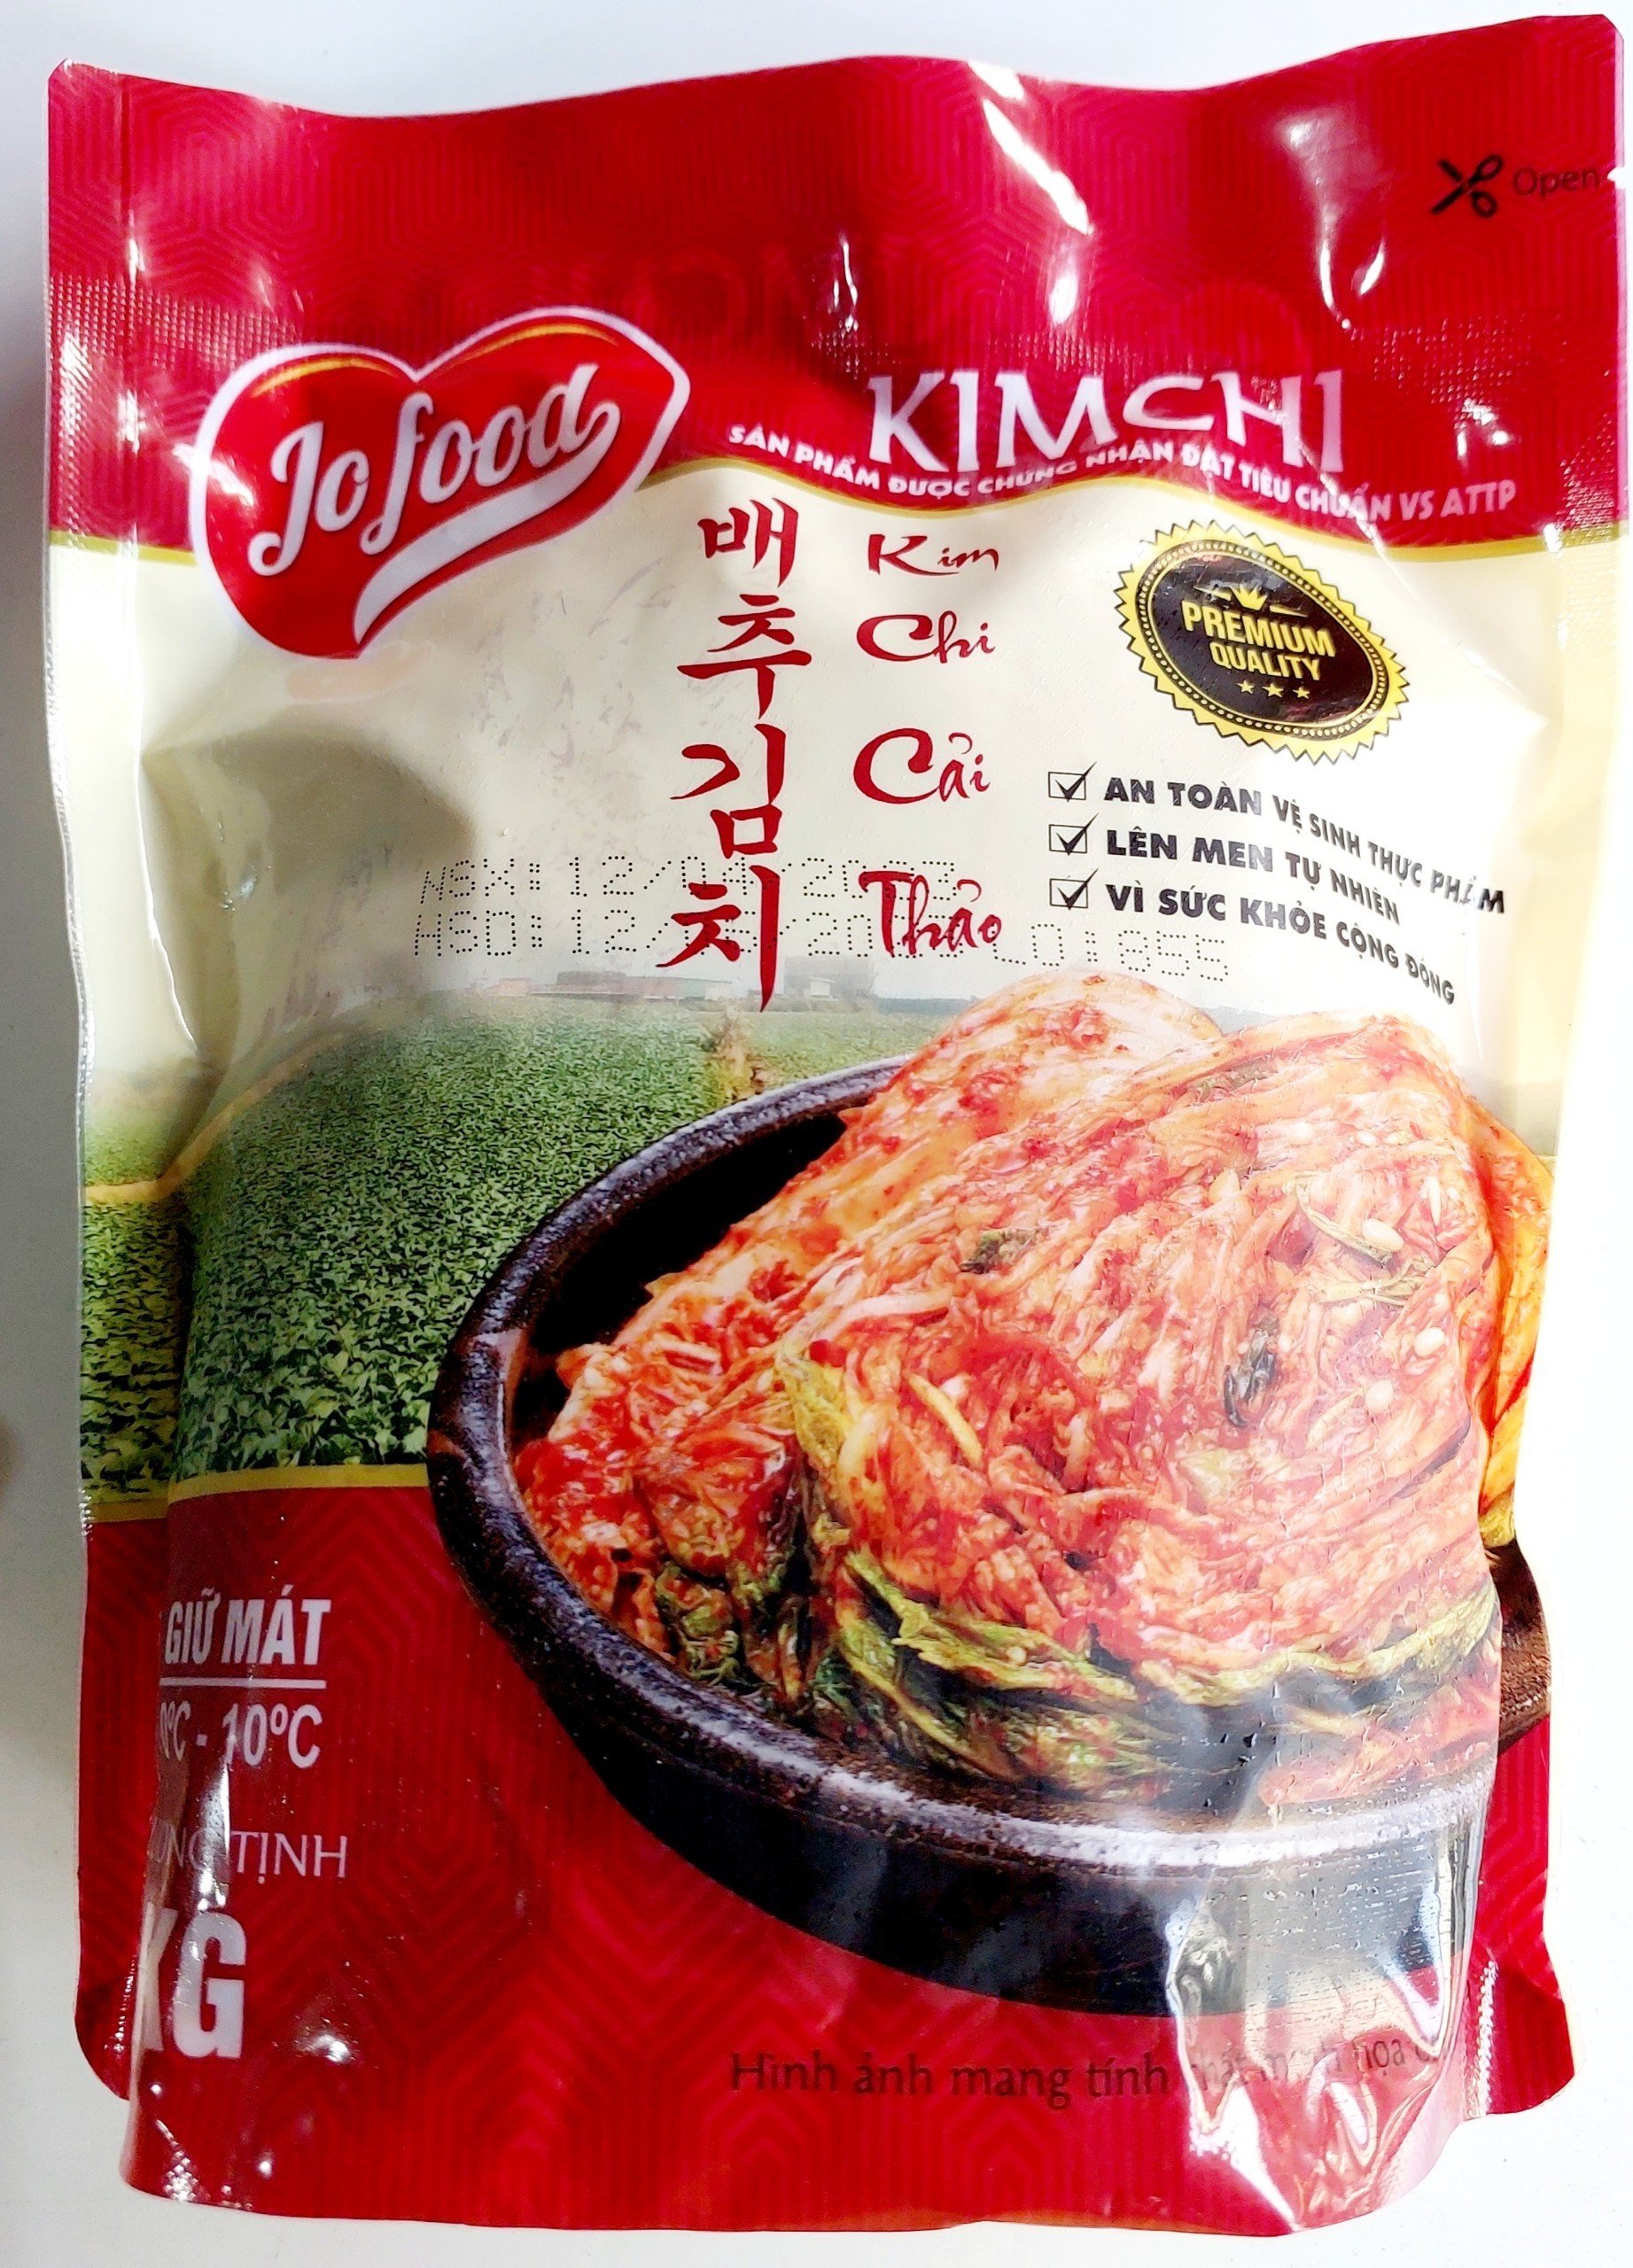 1Kg Kim chi cải thảo Jofood _ siêu rẻ_siêu ngon_Topokki_Viên thả lẩu Shop